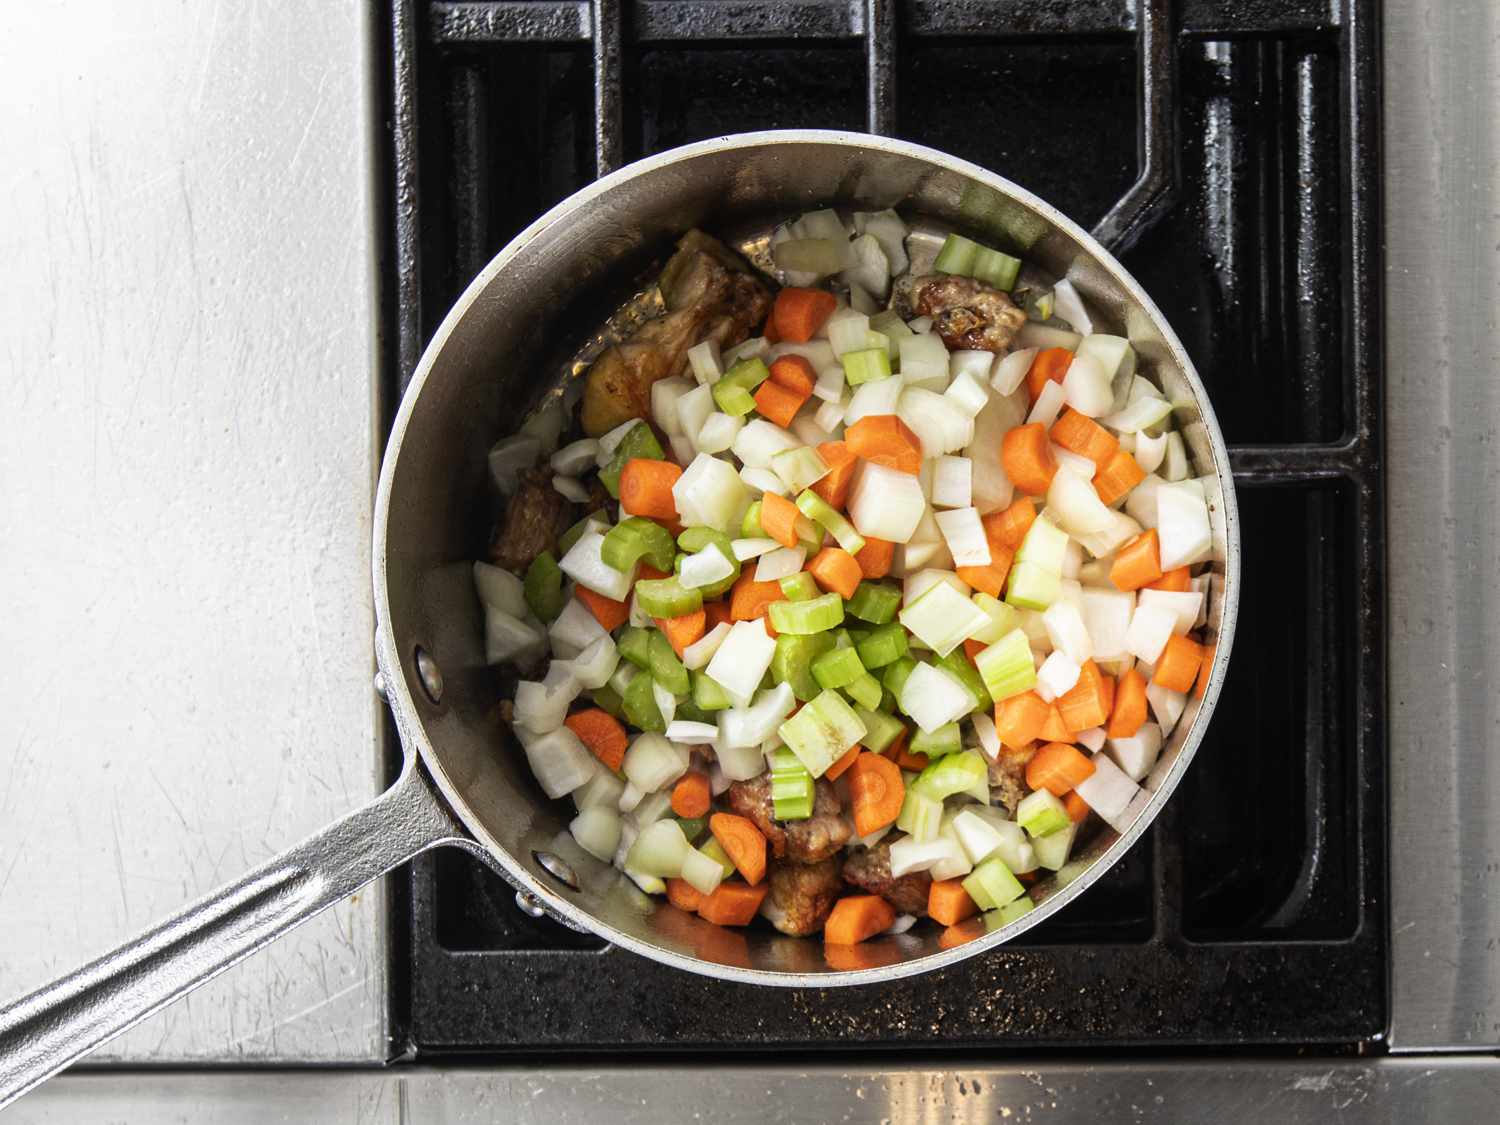 蔬菜和鸡背片sautÃ©在锅里做汁。